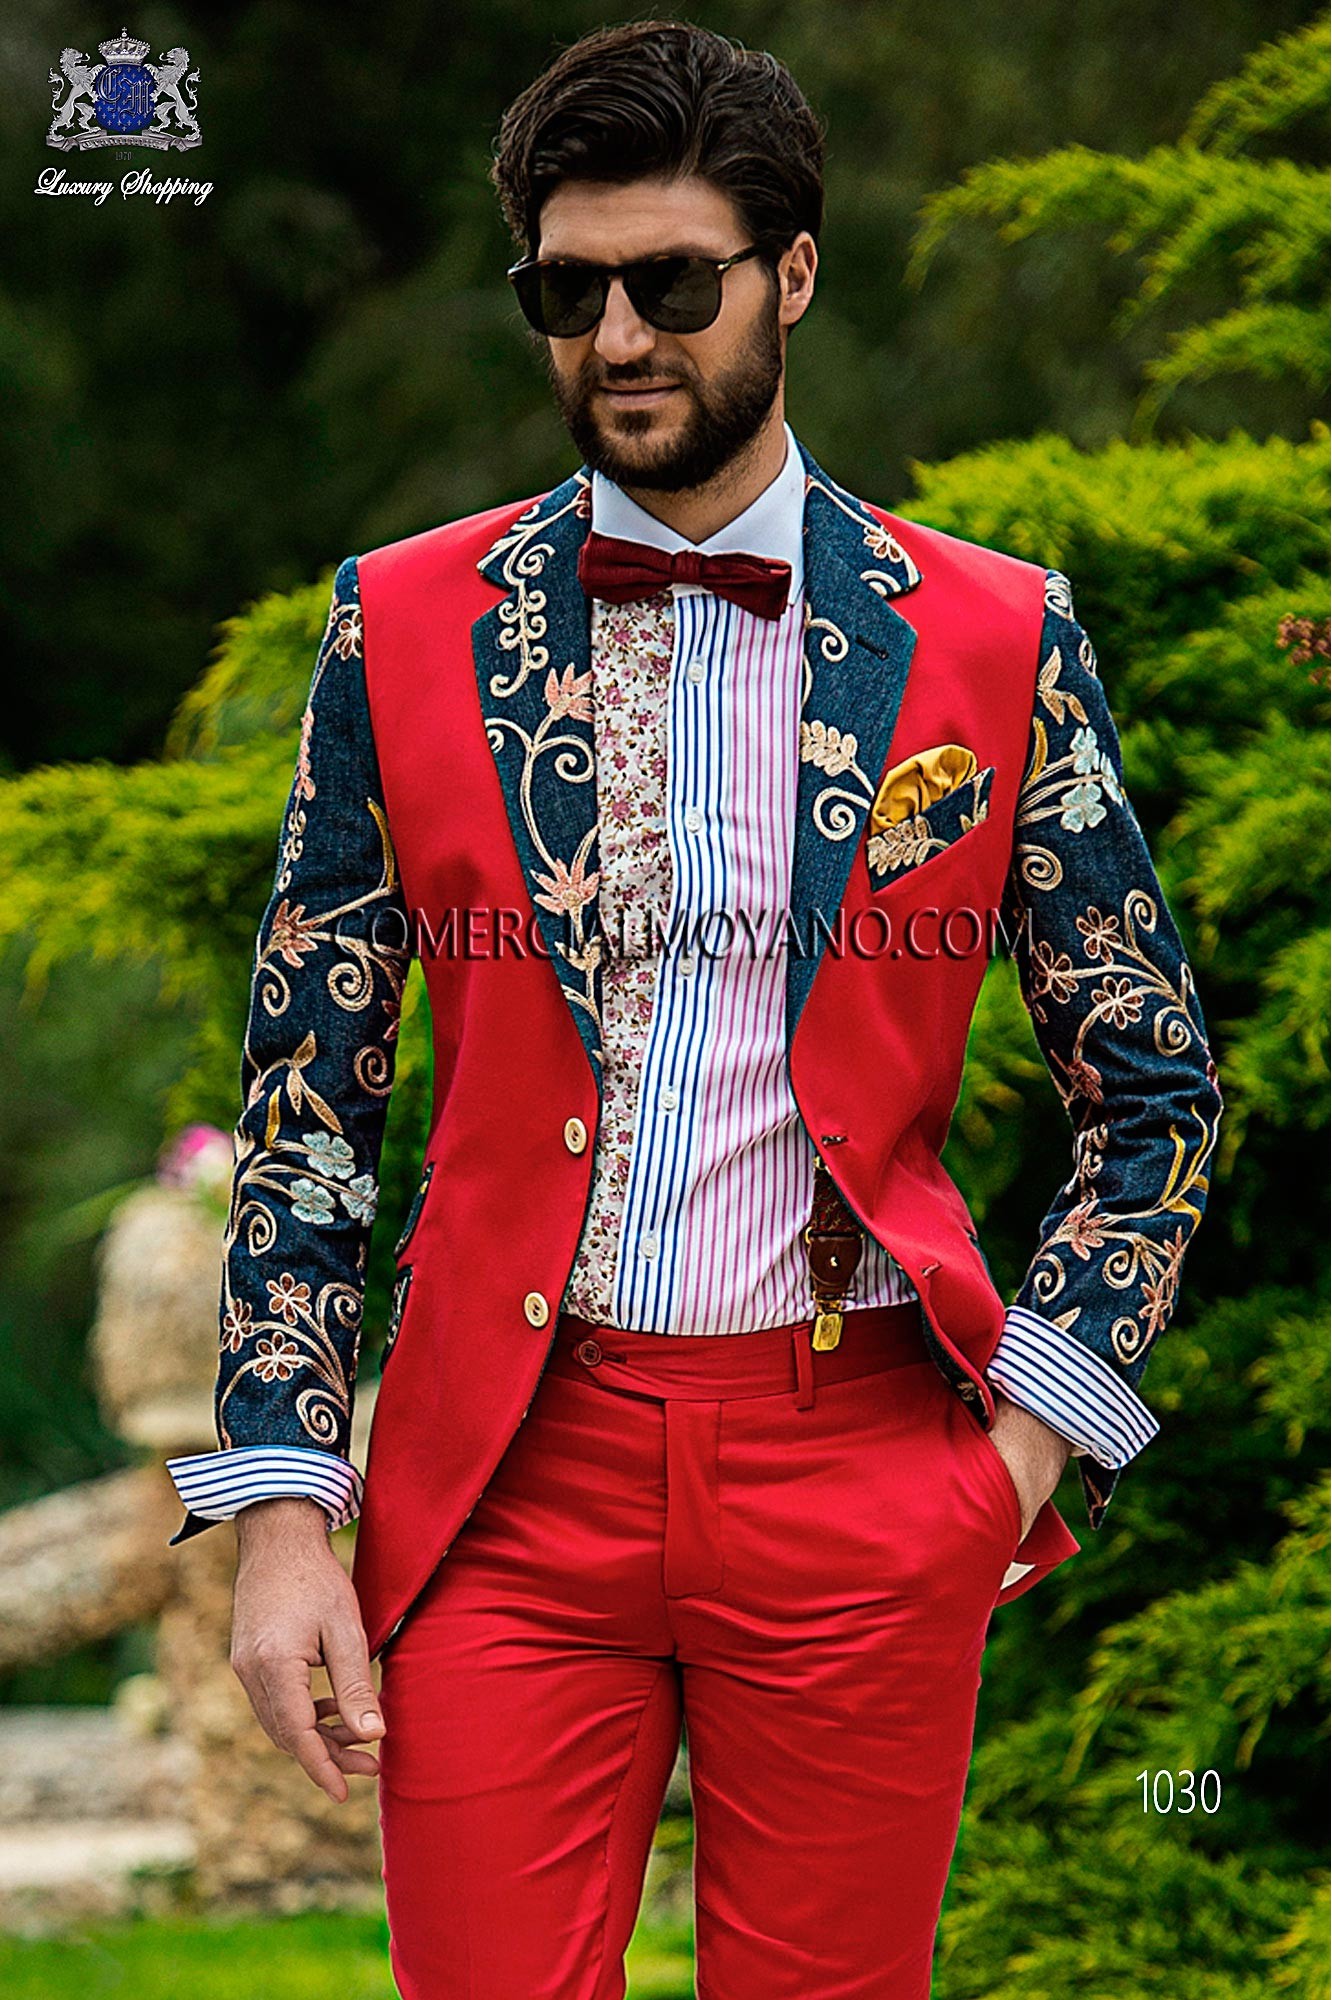 Traje Hipster de novio rojo modelo: 1030 Mario Moyano colección Hipster